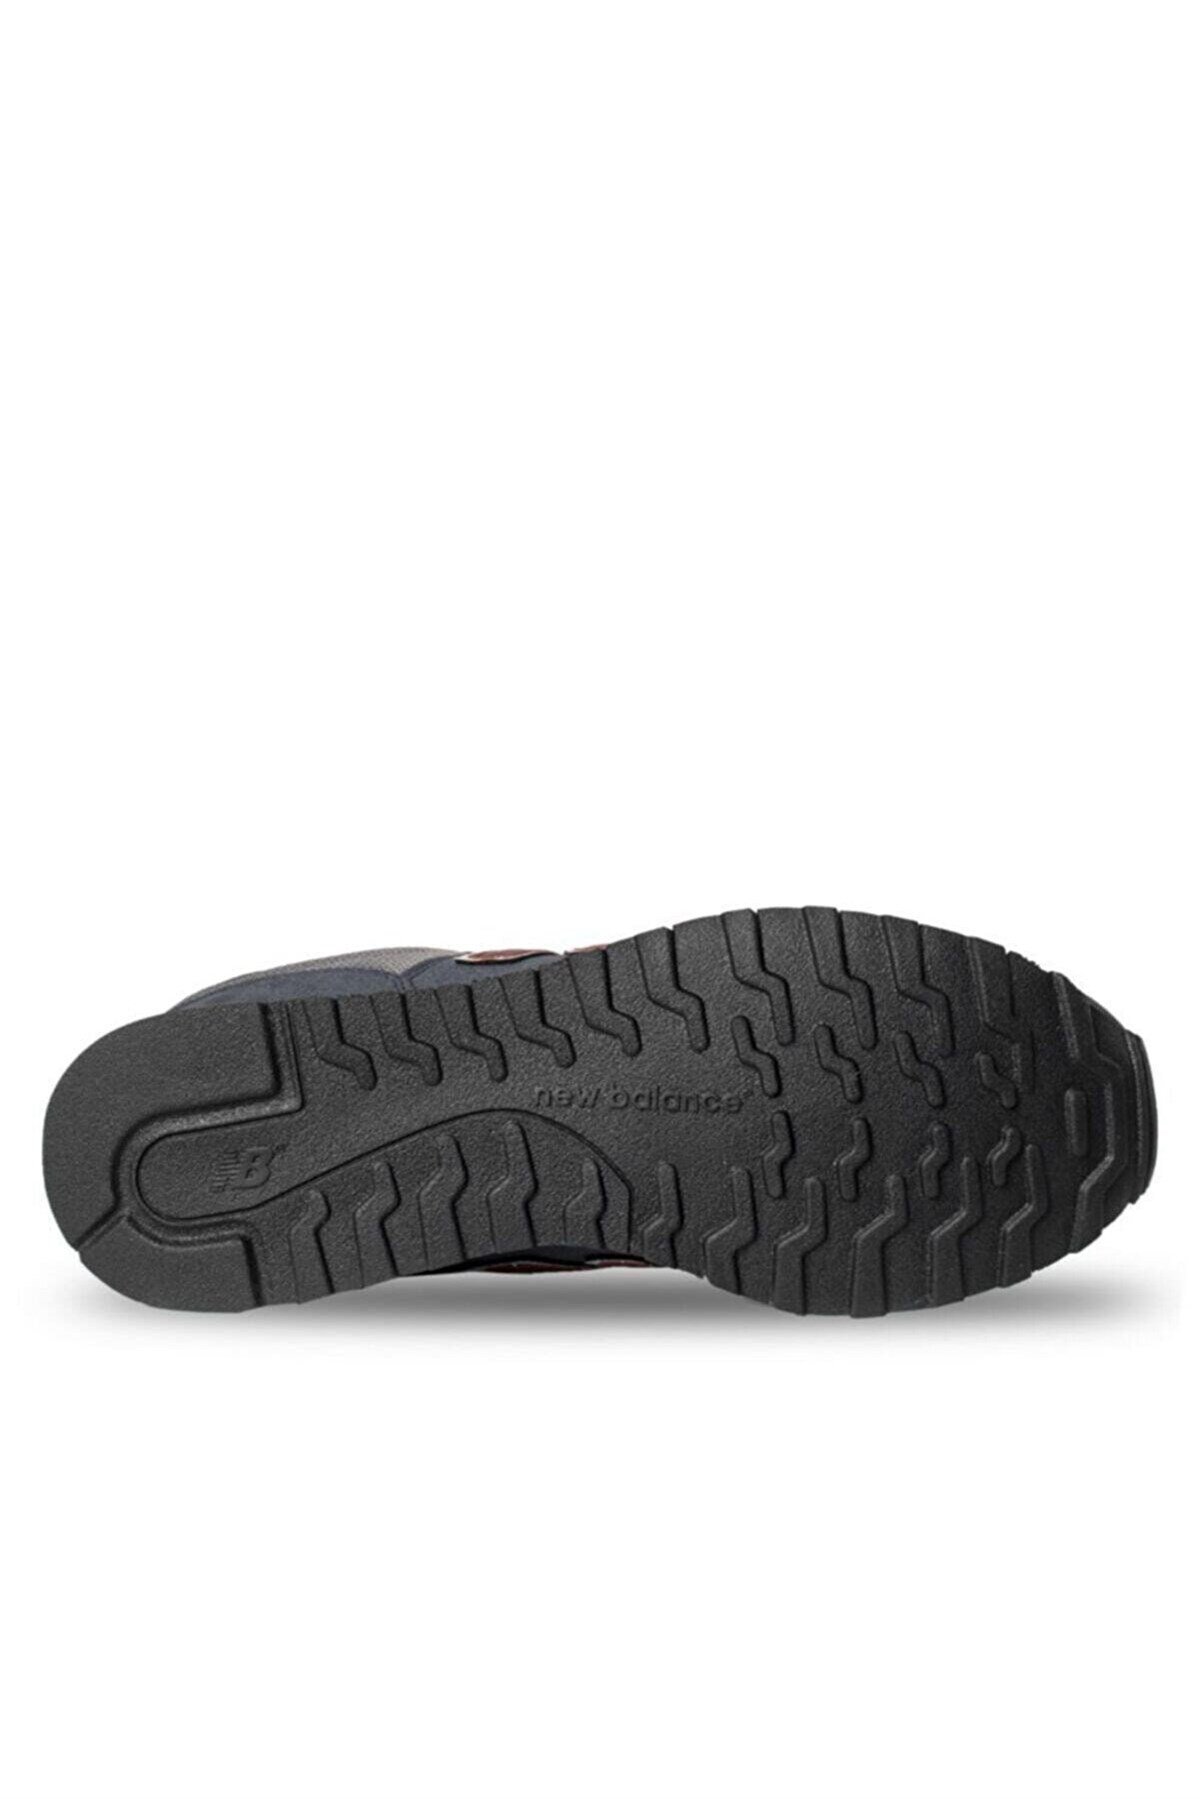 New Balance Lifestyle Mens Shoes Erkek Günlük Ayakkabı - GM500TSK İndirimli  Fiyatlarıyla